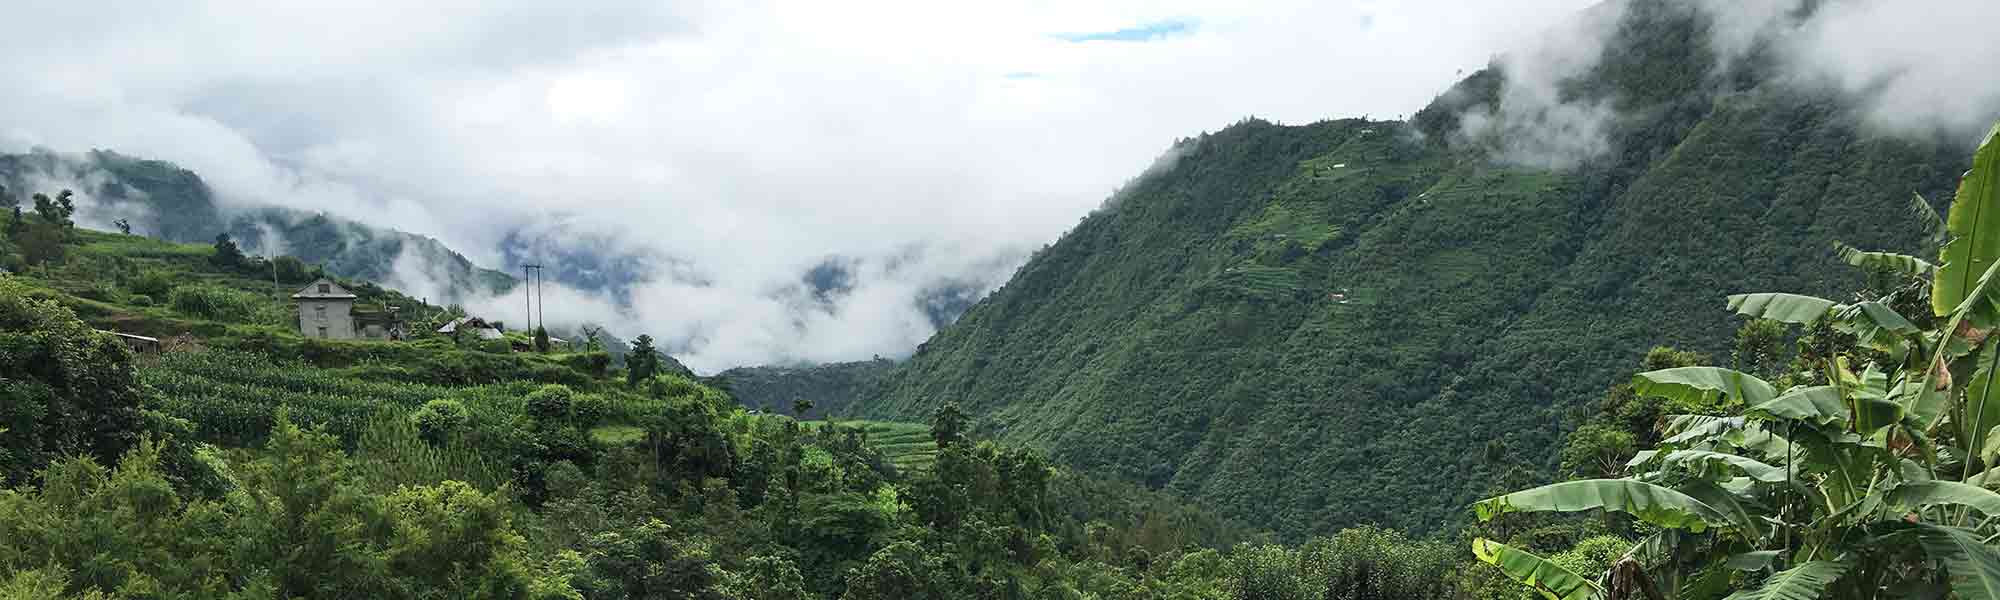 Fjell i kupert landskap med grønne trær i Makwanpur i Nepal